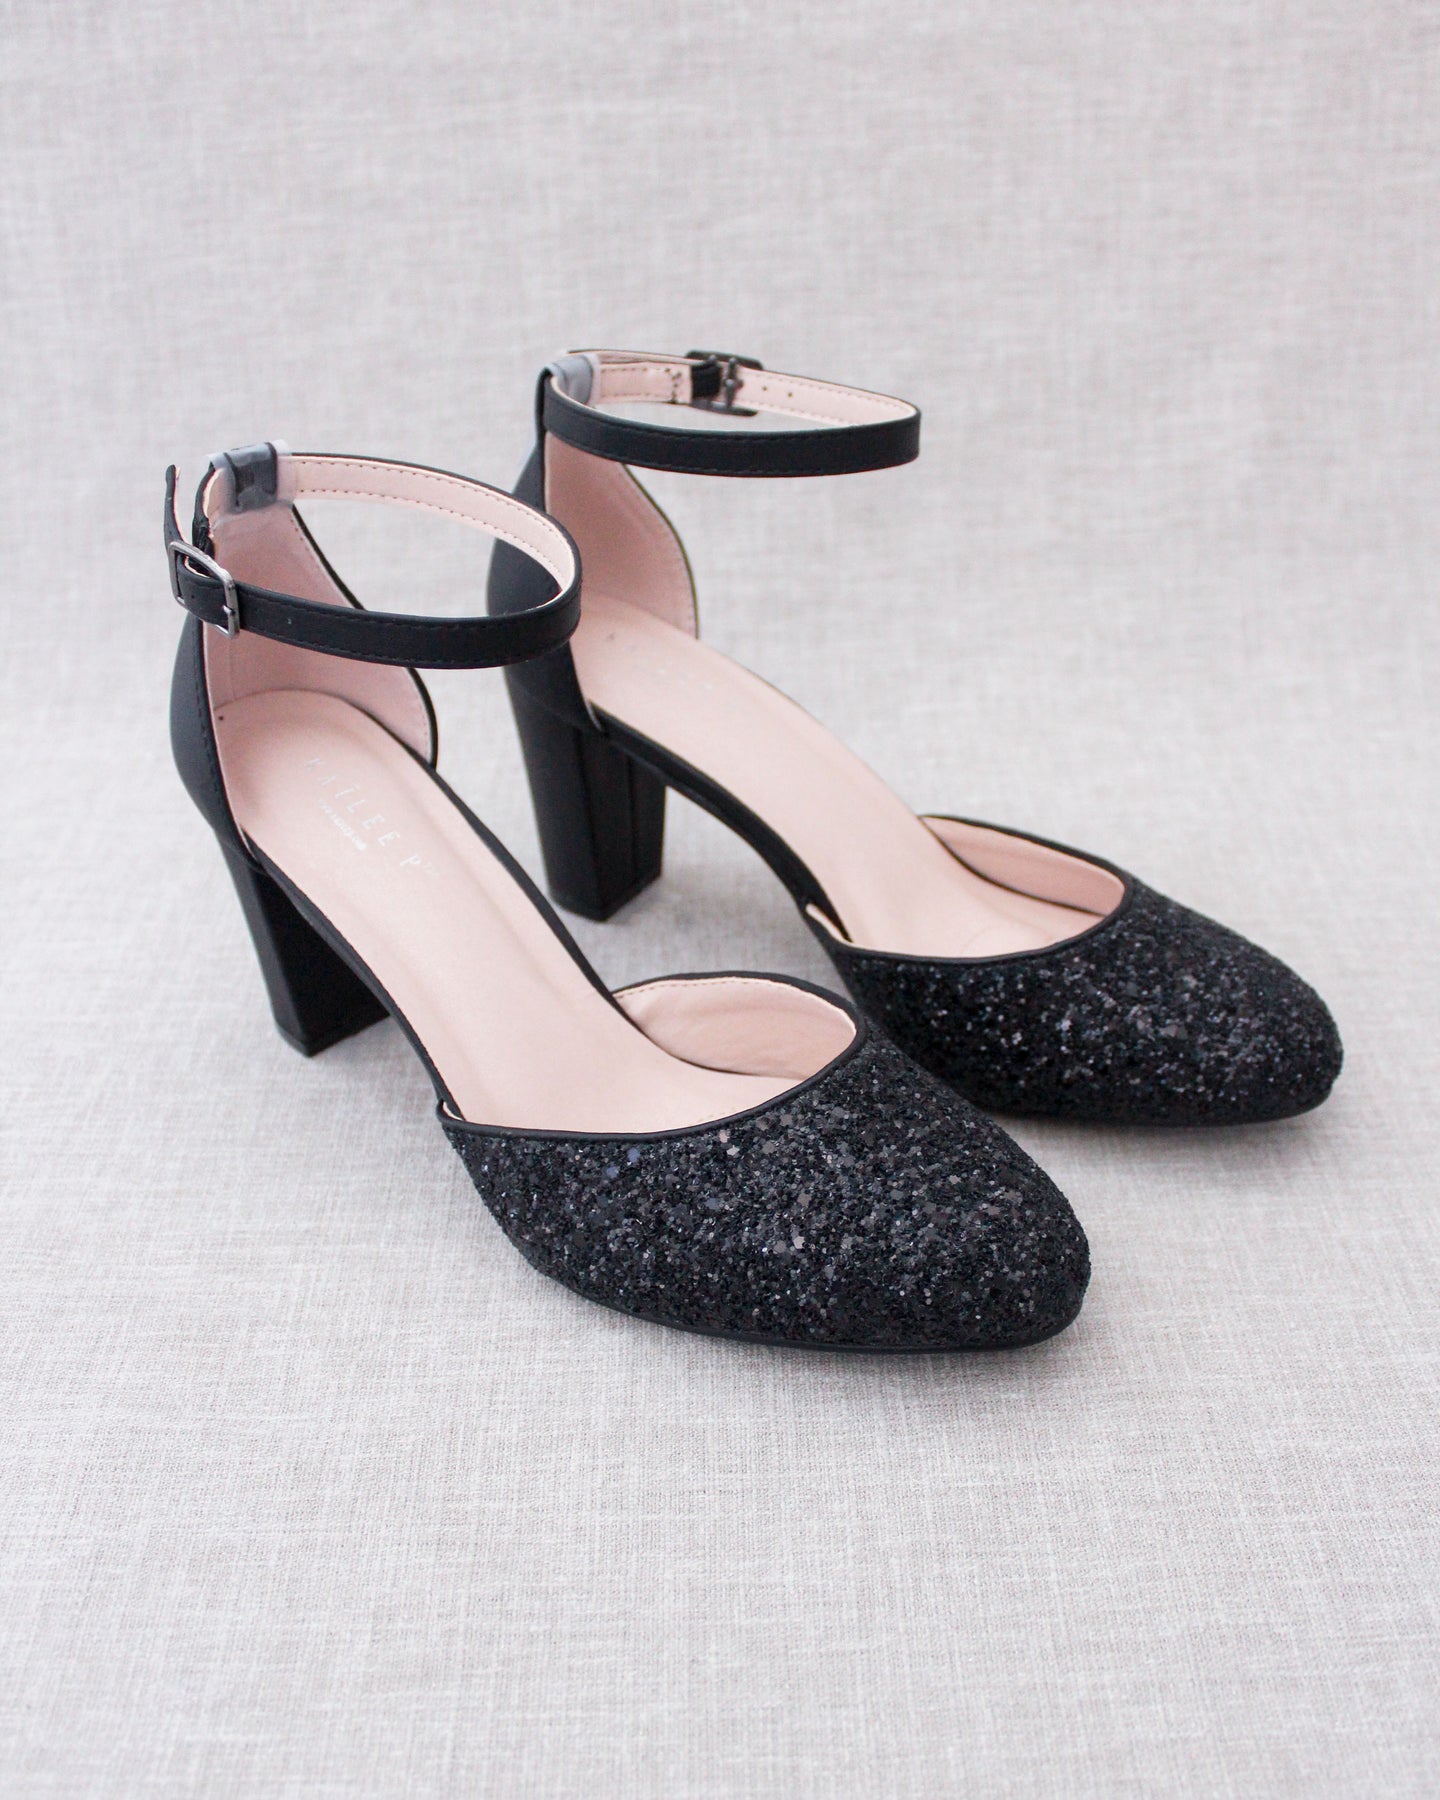 Ladies Black Glitter High Heels Shoes Platforms Court Shoes | Heels, Glitter  high heels, Black shoes heels